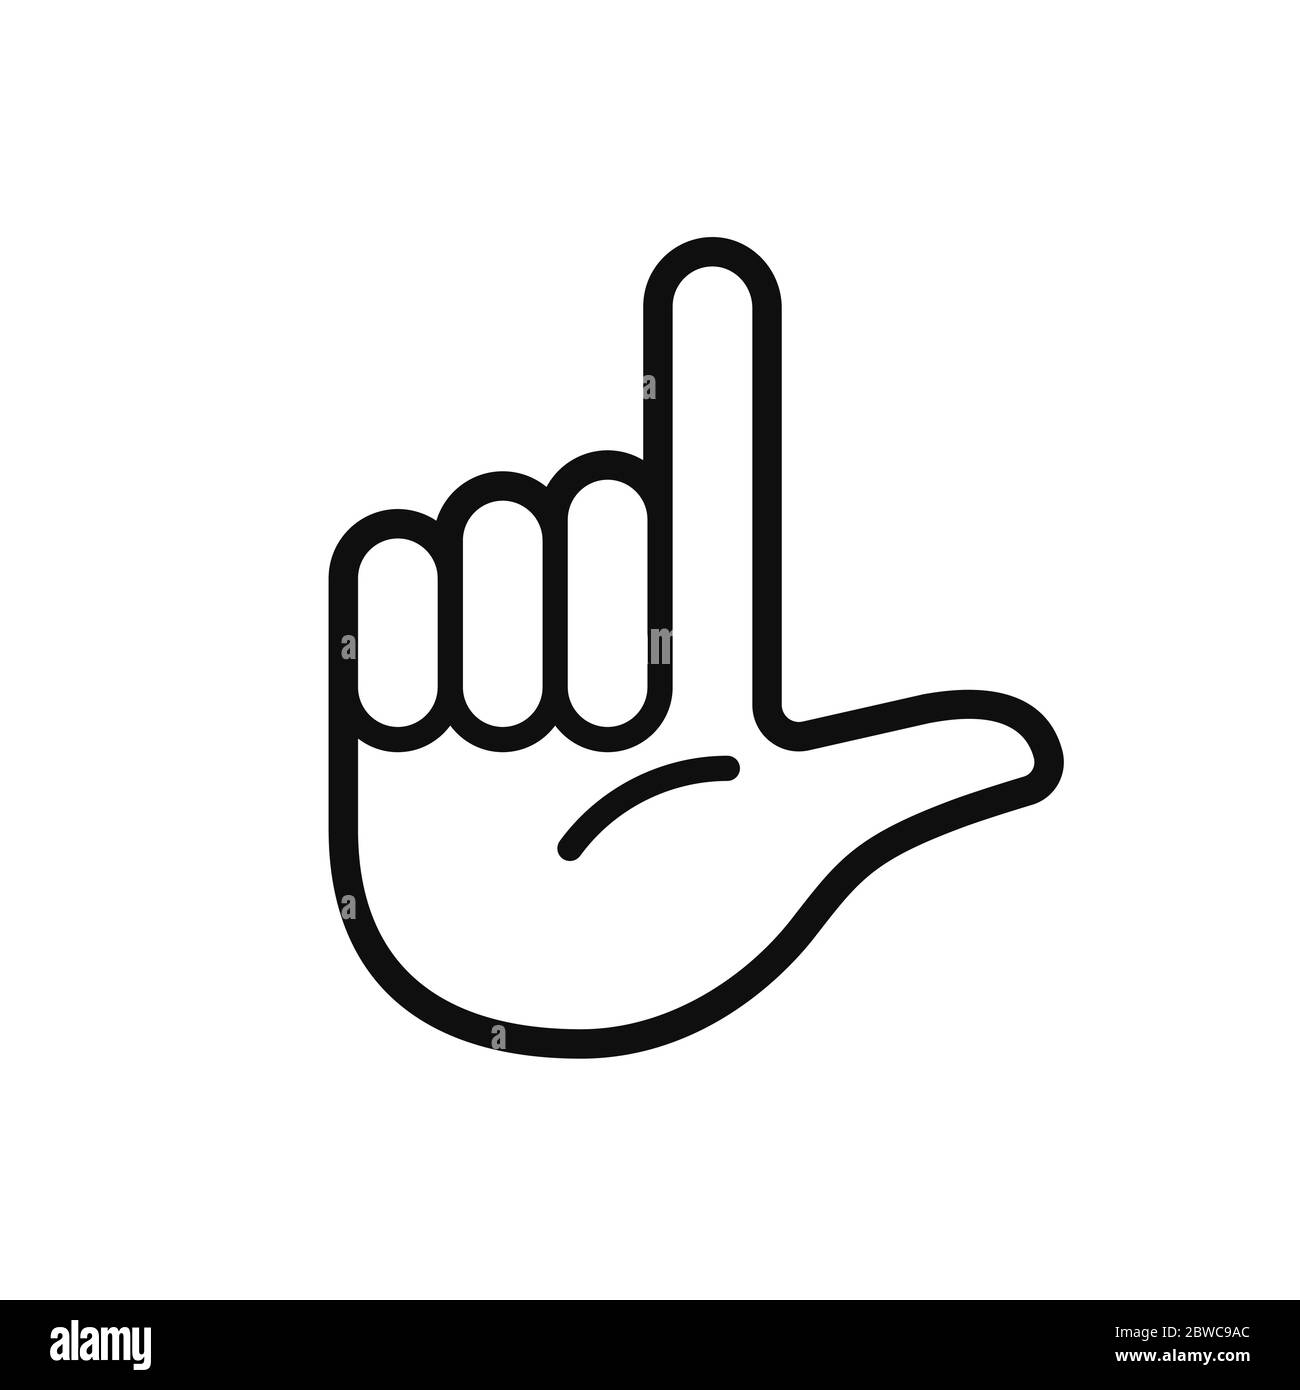 Mouvement de la main avec la lettre L, signe du perdant. Icône simple en noir et blanc. Illustration vectorielle isolée. Illustration de Vecteur